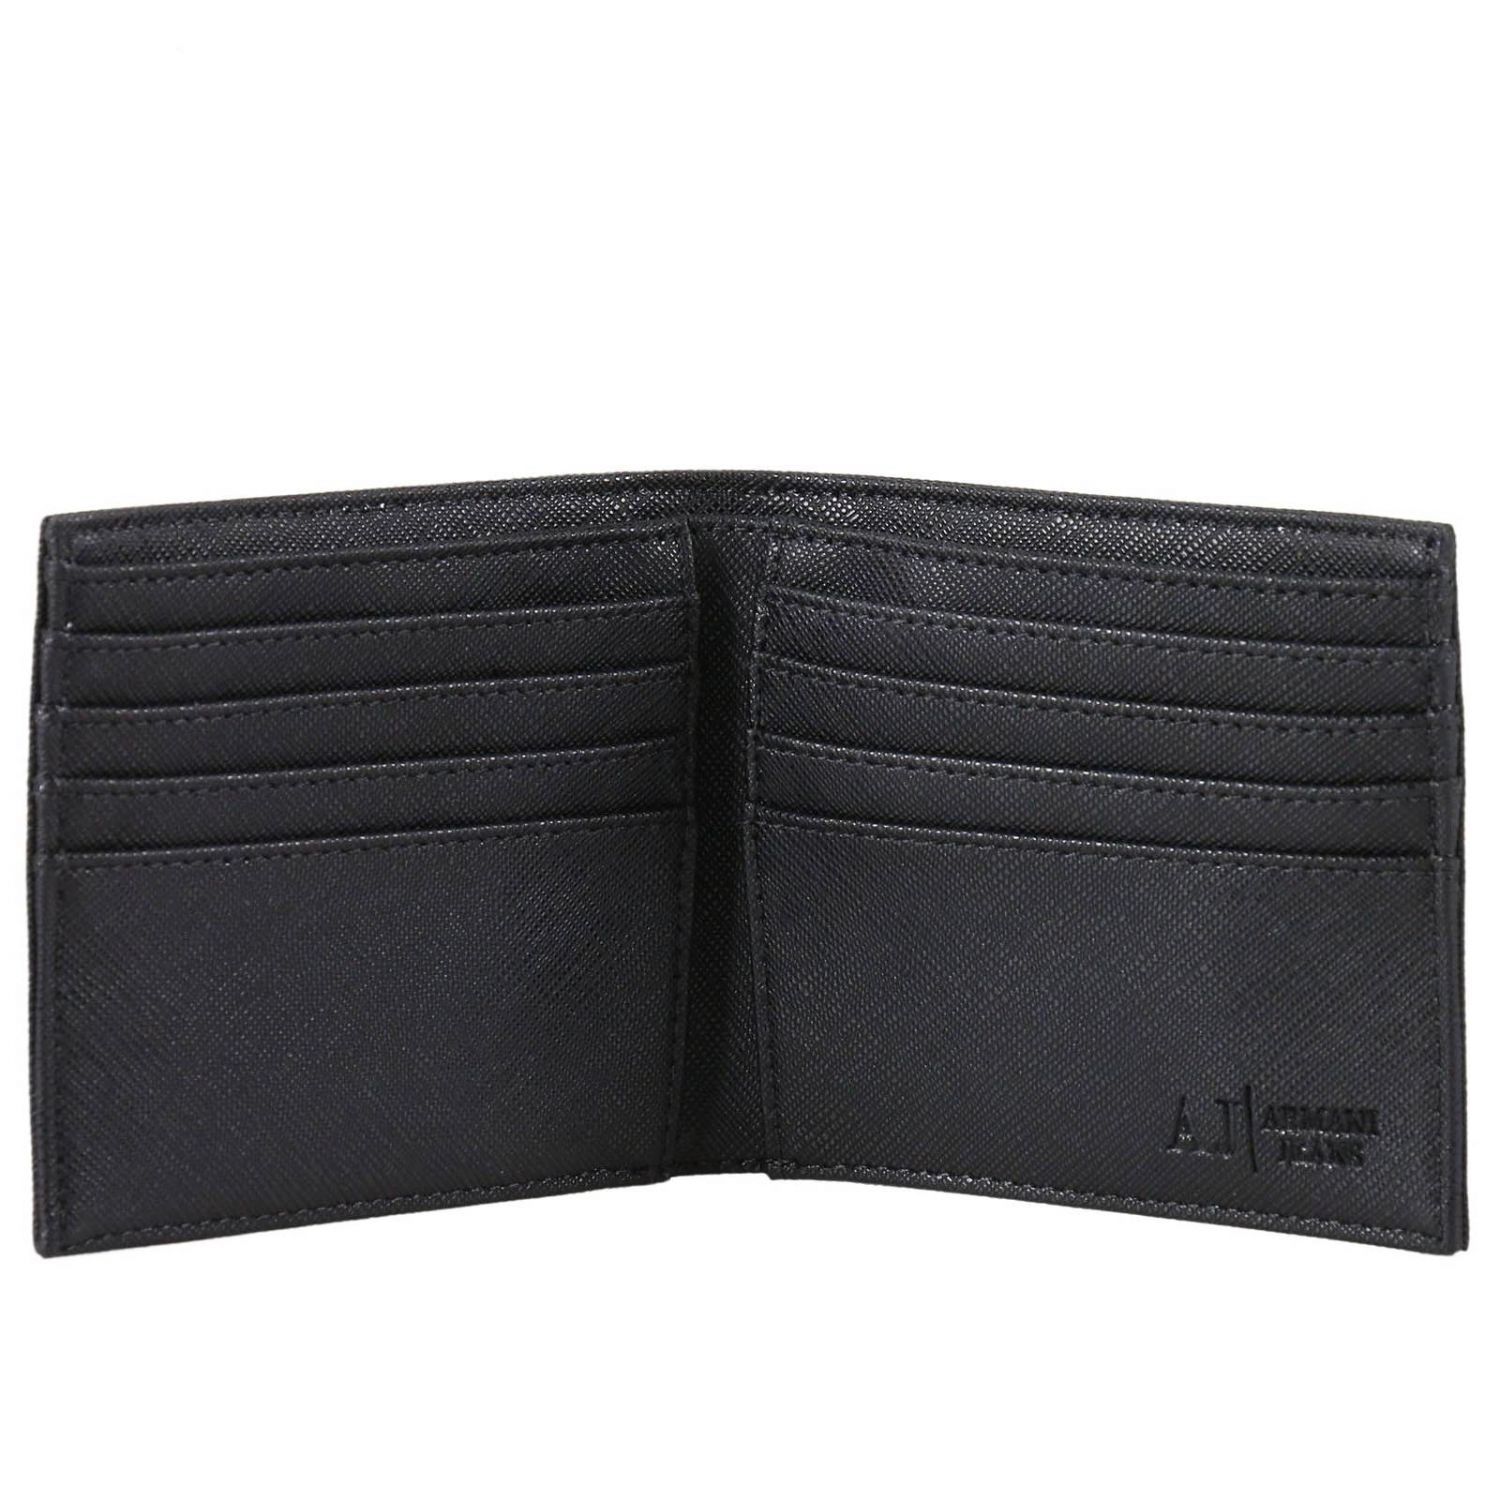 Armani Jeans Outlet: Wallet men | Wallet Armani Jeans Men Black ...